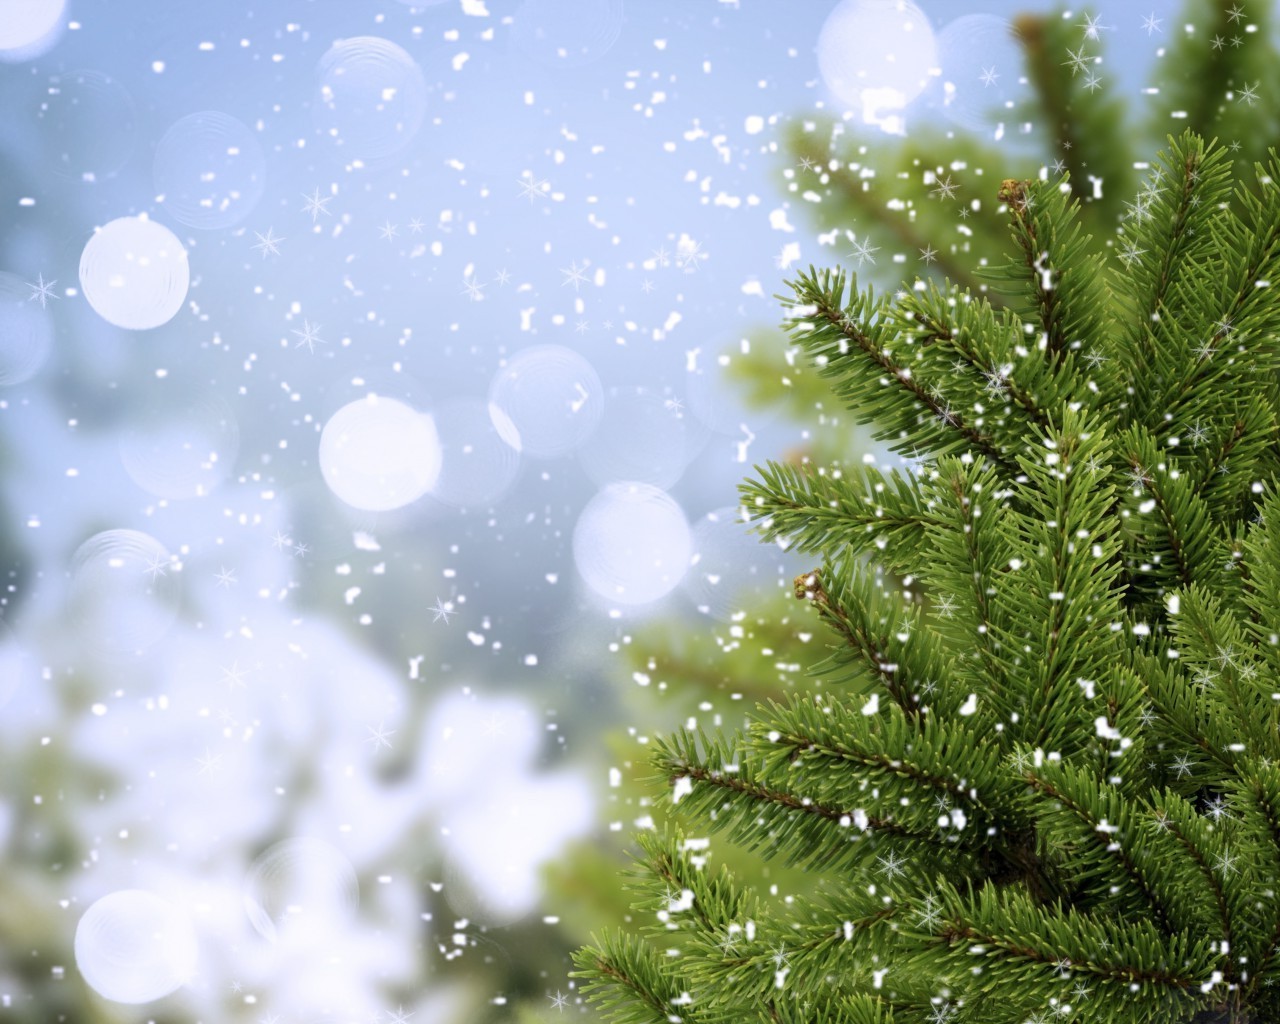 зима рождество сосна дерево пихта сезон снег украшения праздник мерри ели яркий филиал светит природа рабочего стола снежинка блестят эвергрин ева